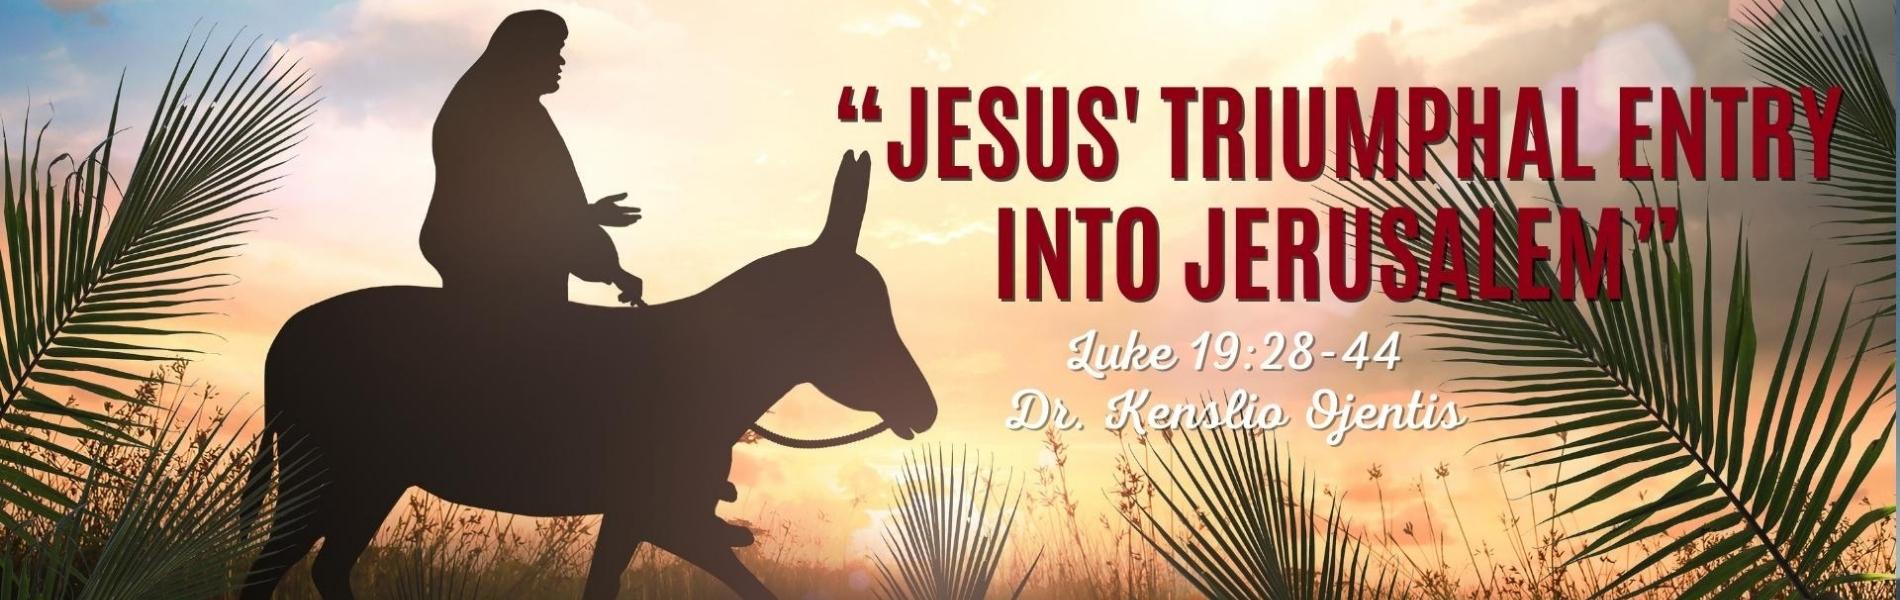 Jesus’ Triumphal Entry into Jerusalem